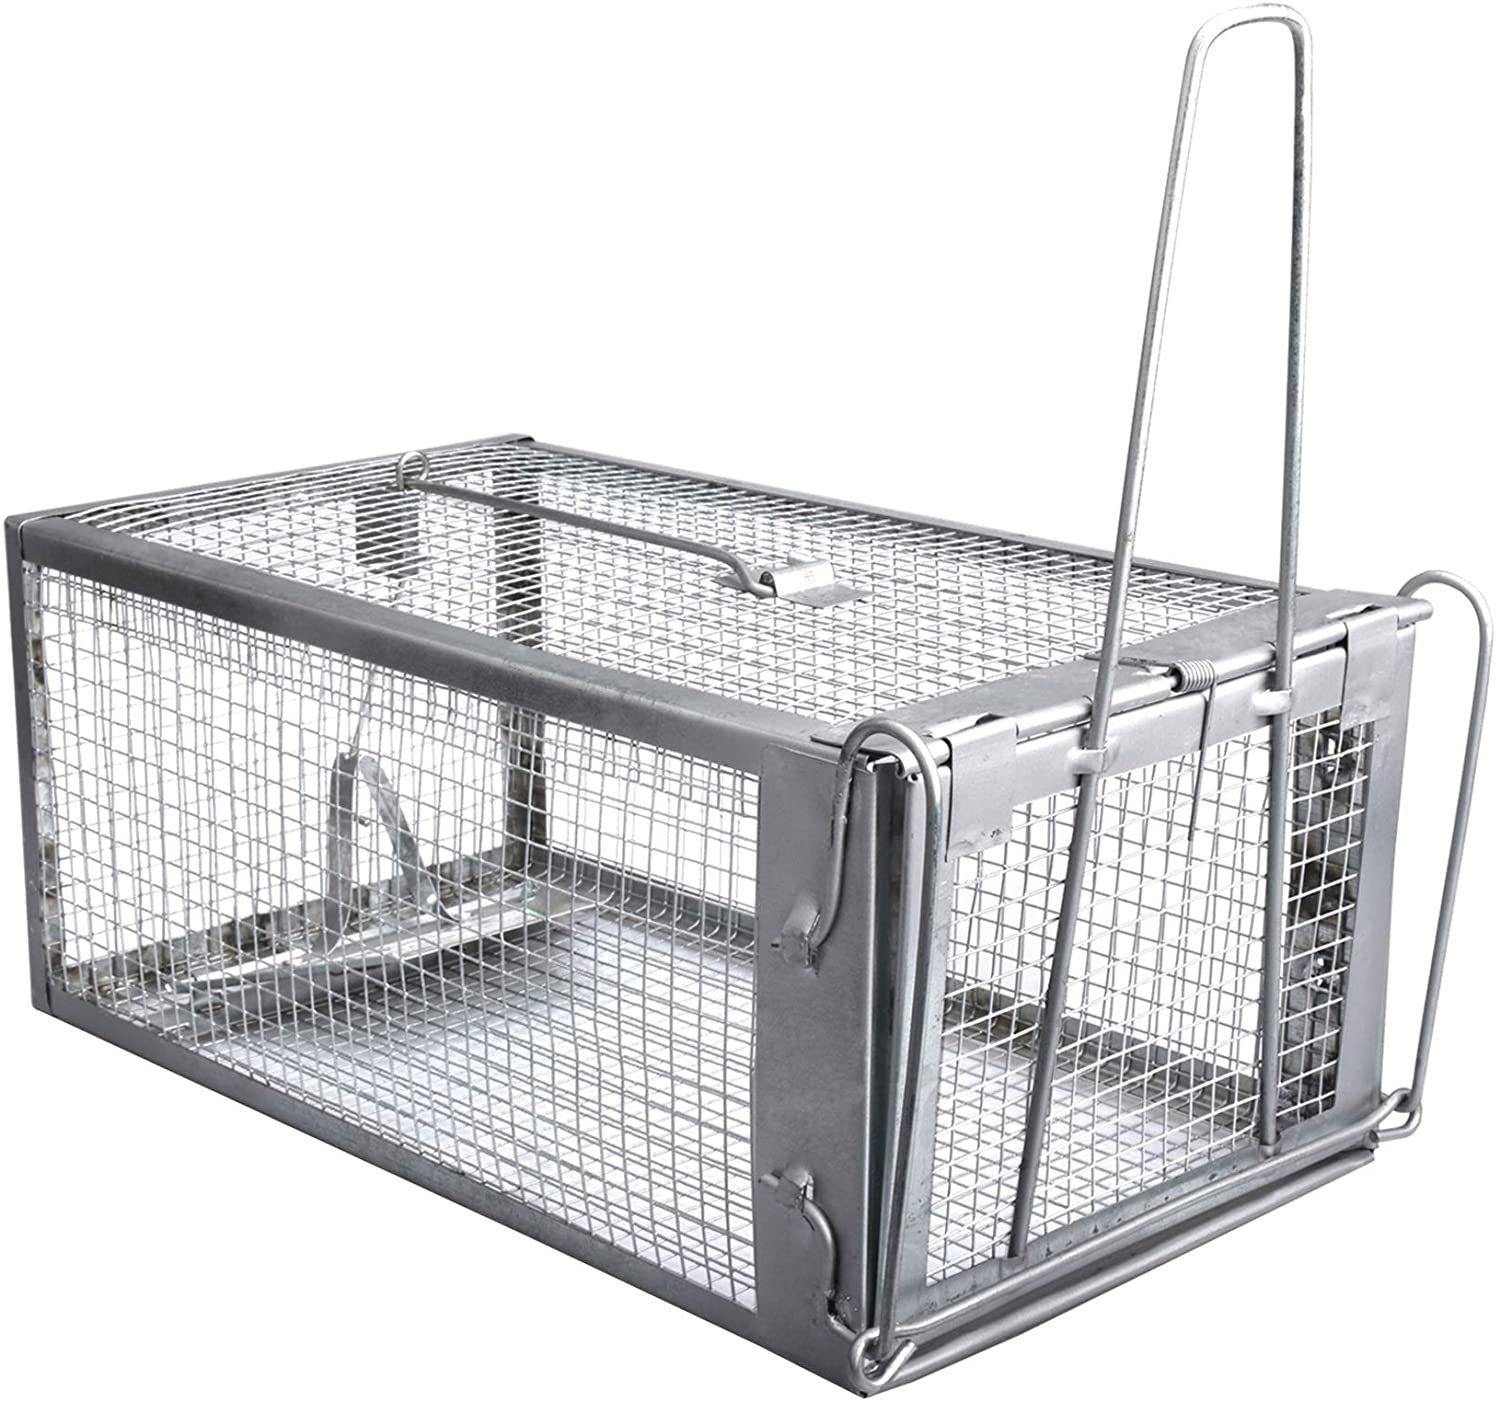 Gingbau Cage Trap